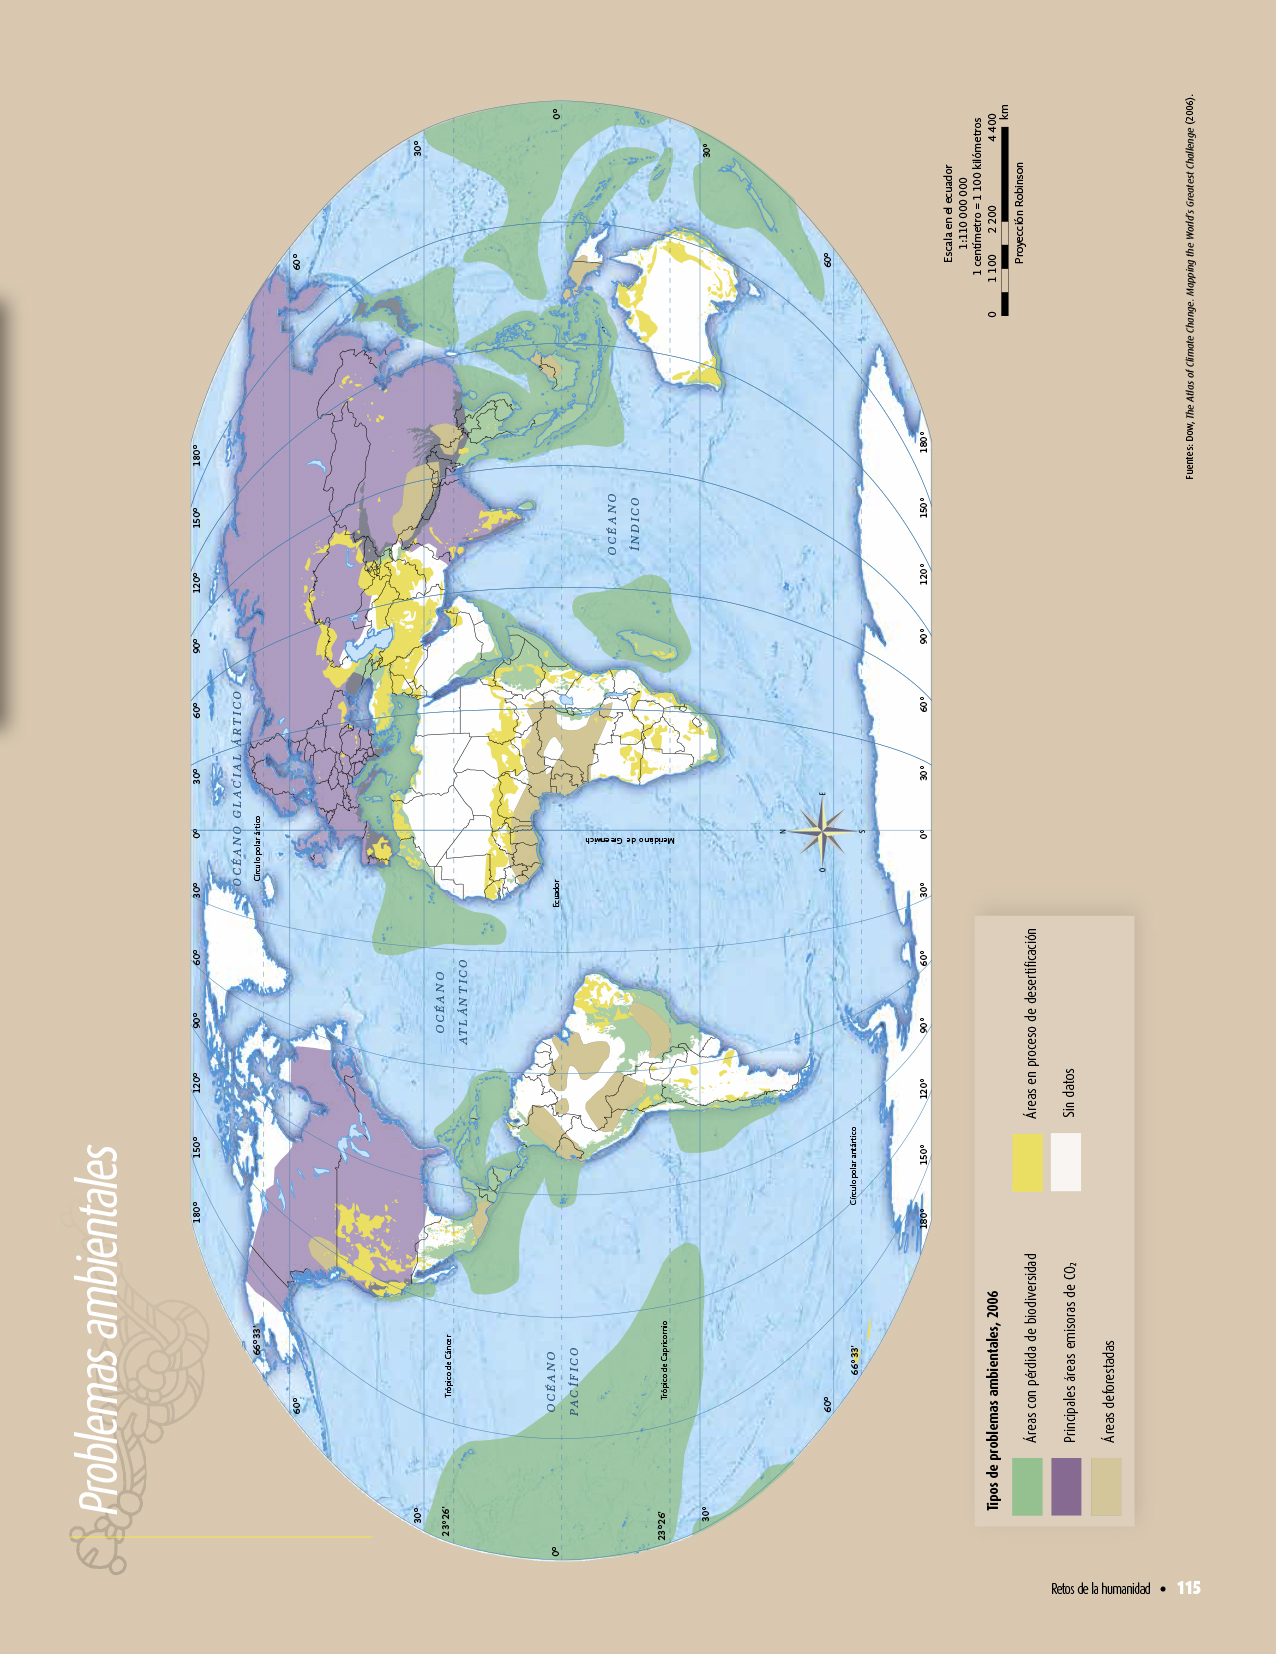 Atlas De Geografia Del Mundo Quinto Grado 2017 2018 Pagina 115 De 122 Libros De Texto Online